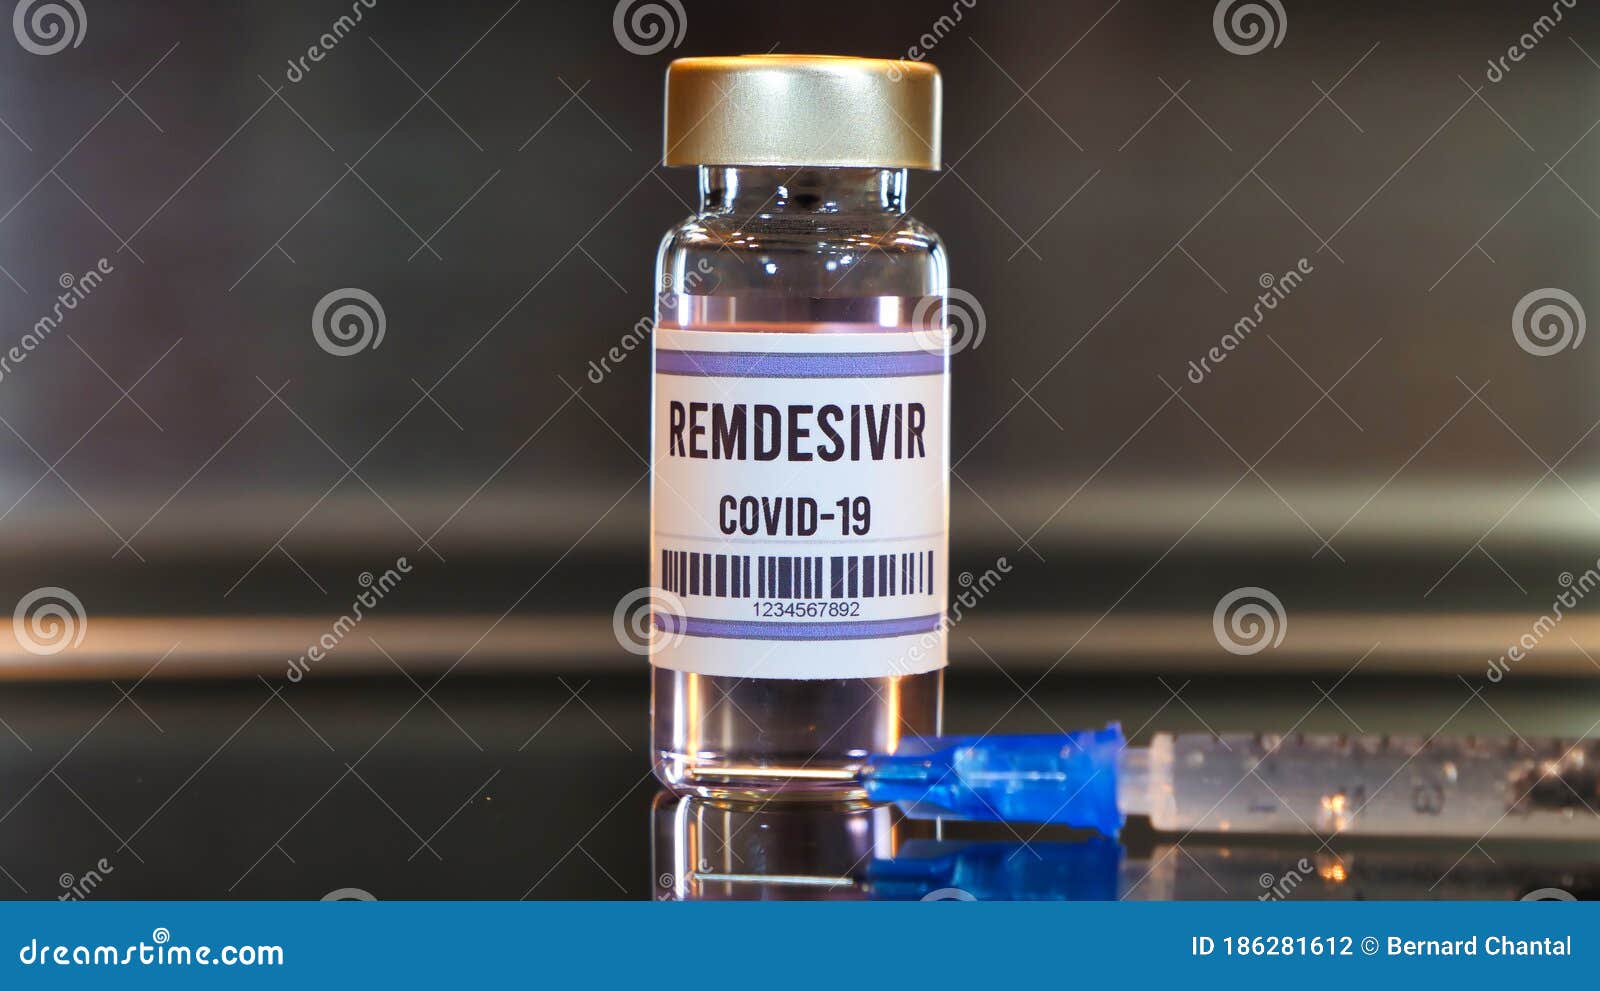 remdesivir drug and syringe on black table